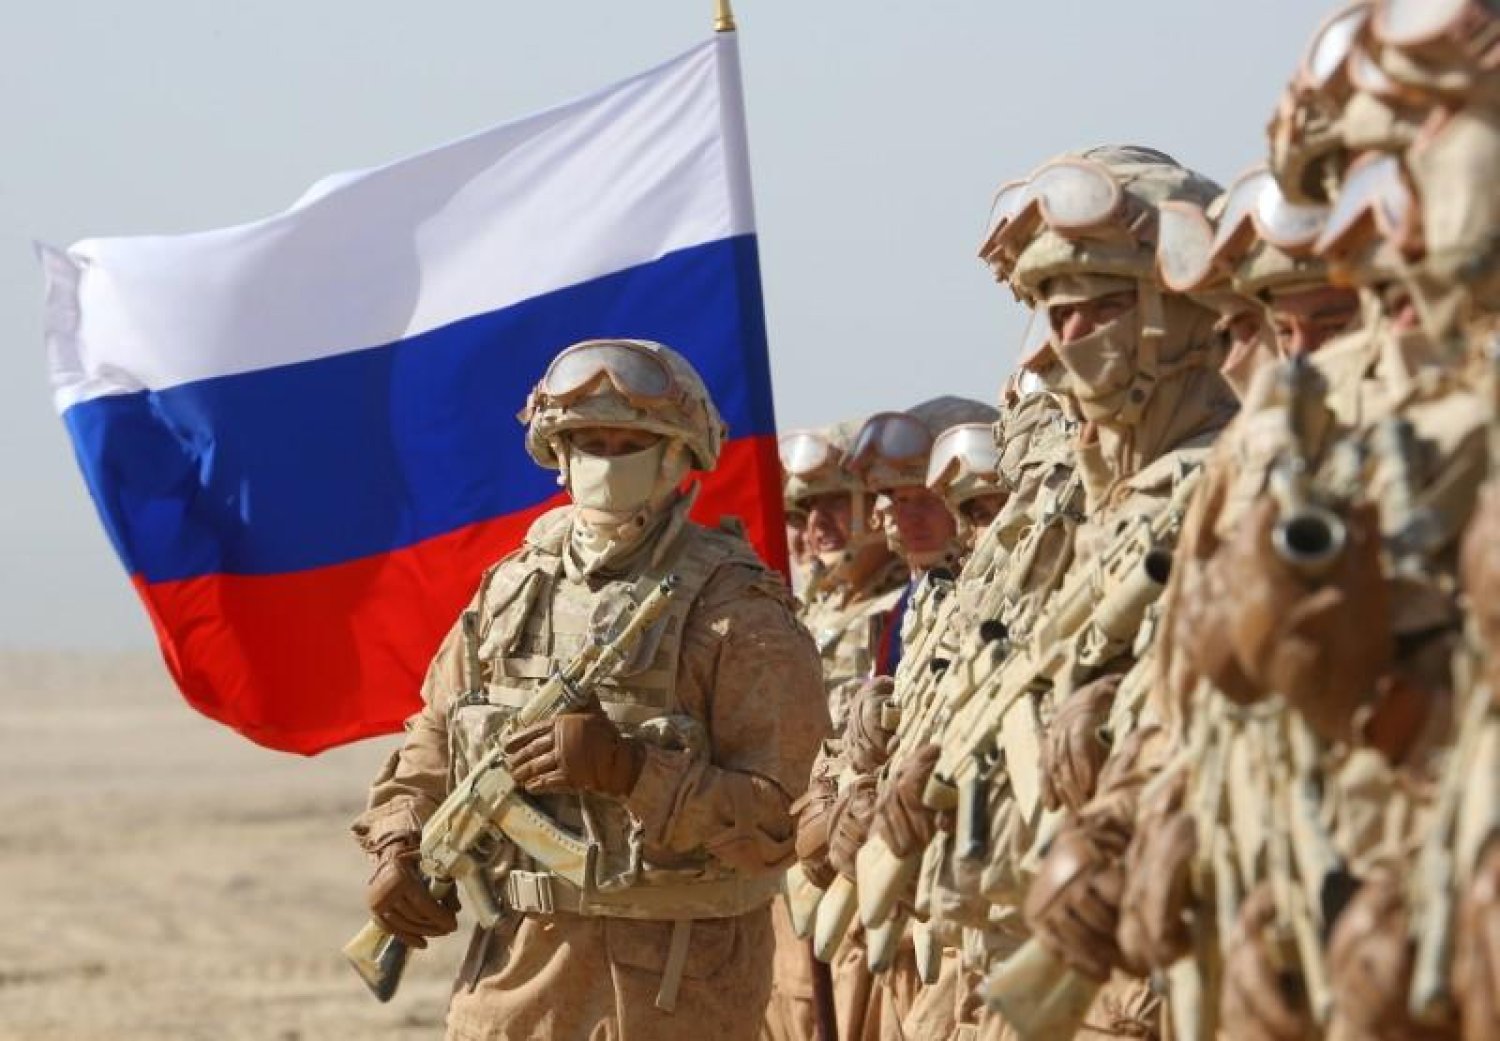 عوامل تصاعد الجدل بشأن القاعدة العسكرية الروسية في ليبيا